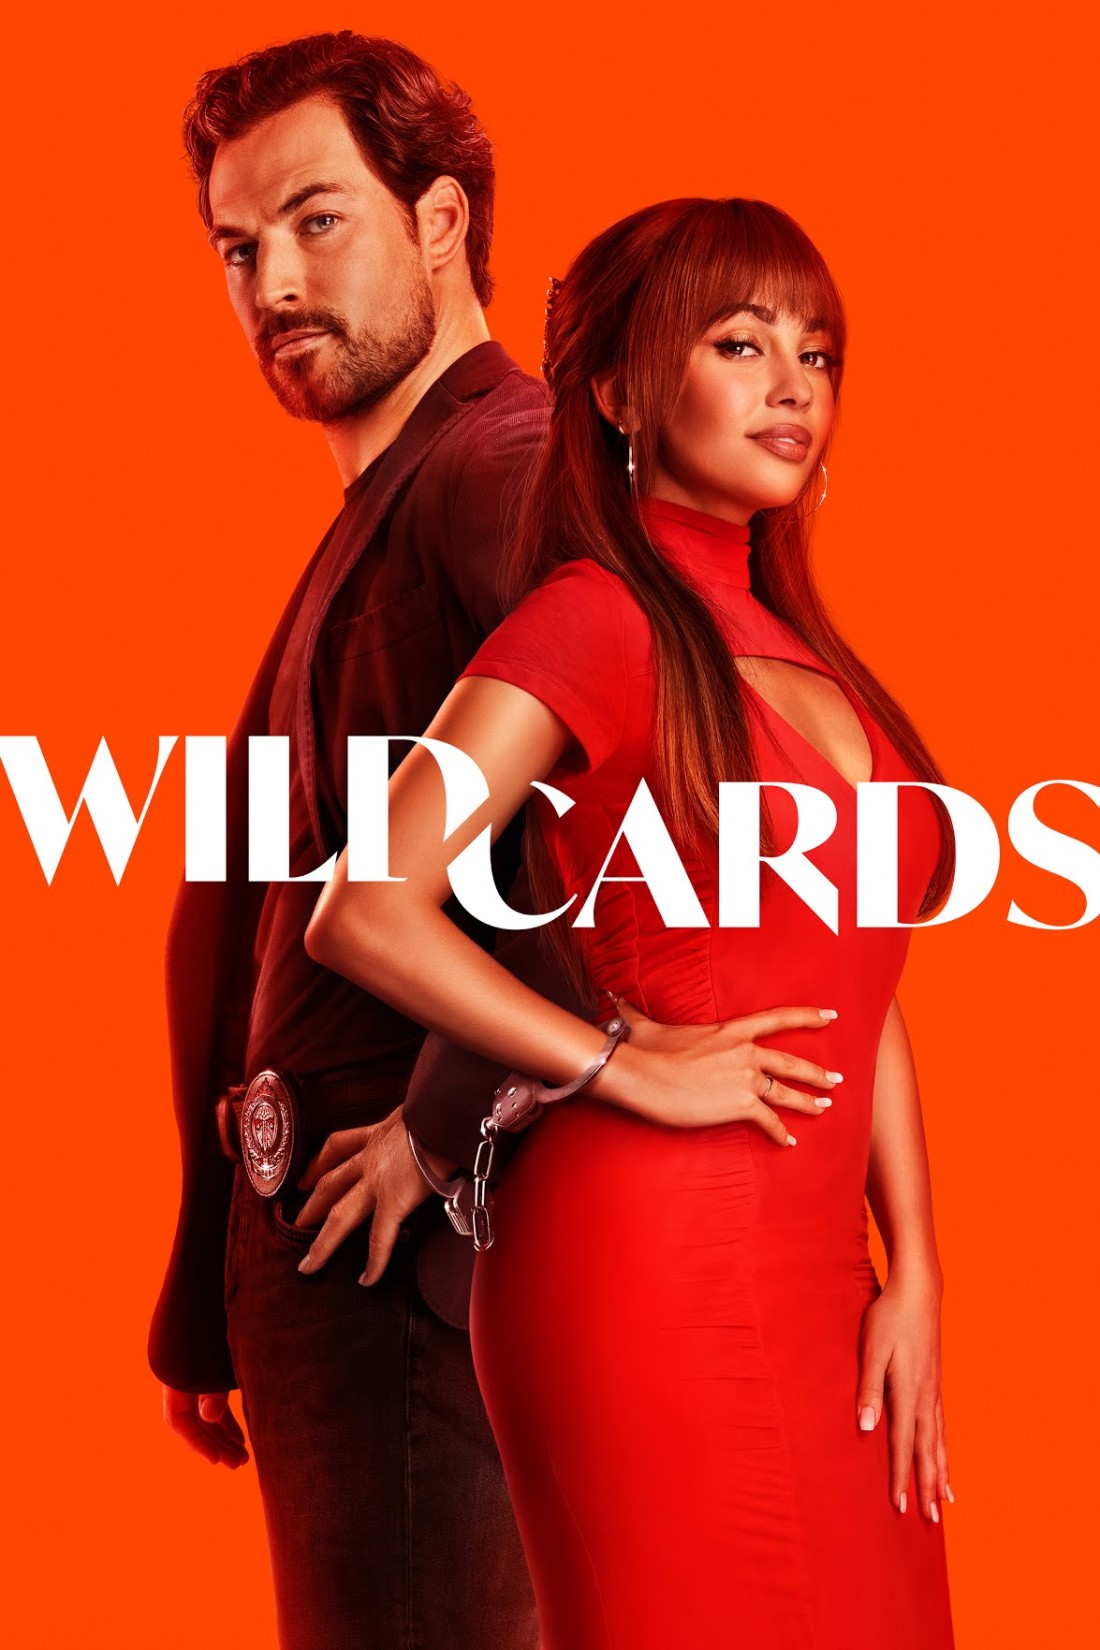 Wild Cards S01E03 [1080p/720p] HDTV (x264/x265) [6 CH] 3a717ea1aa81d16817aca9945edf5f81